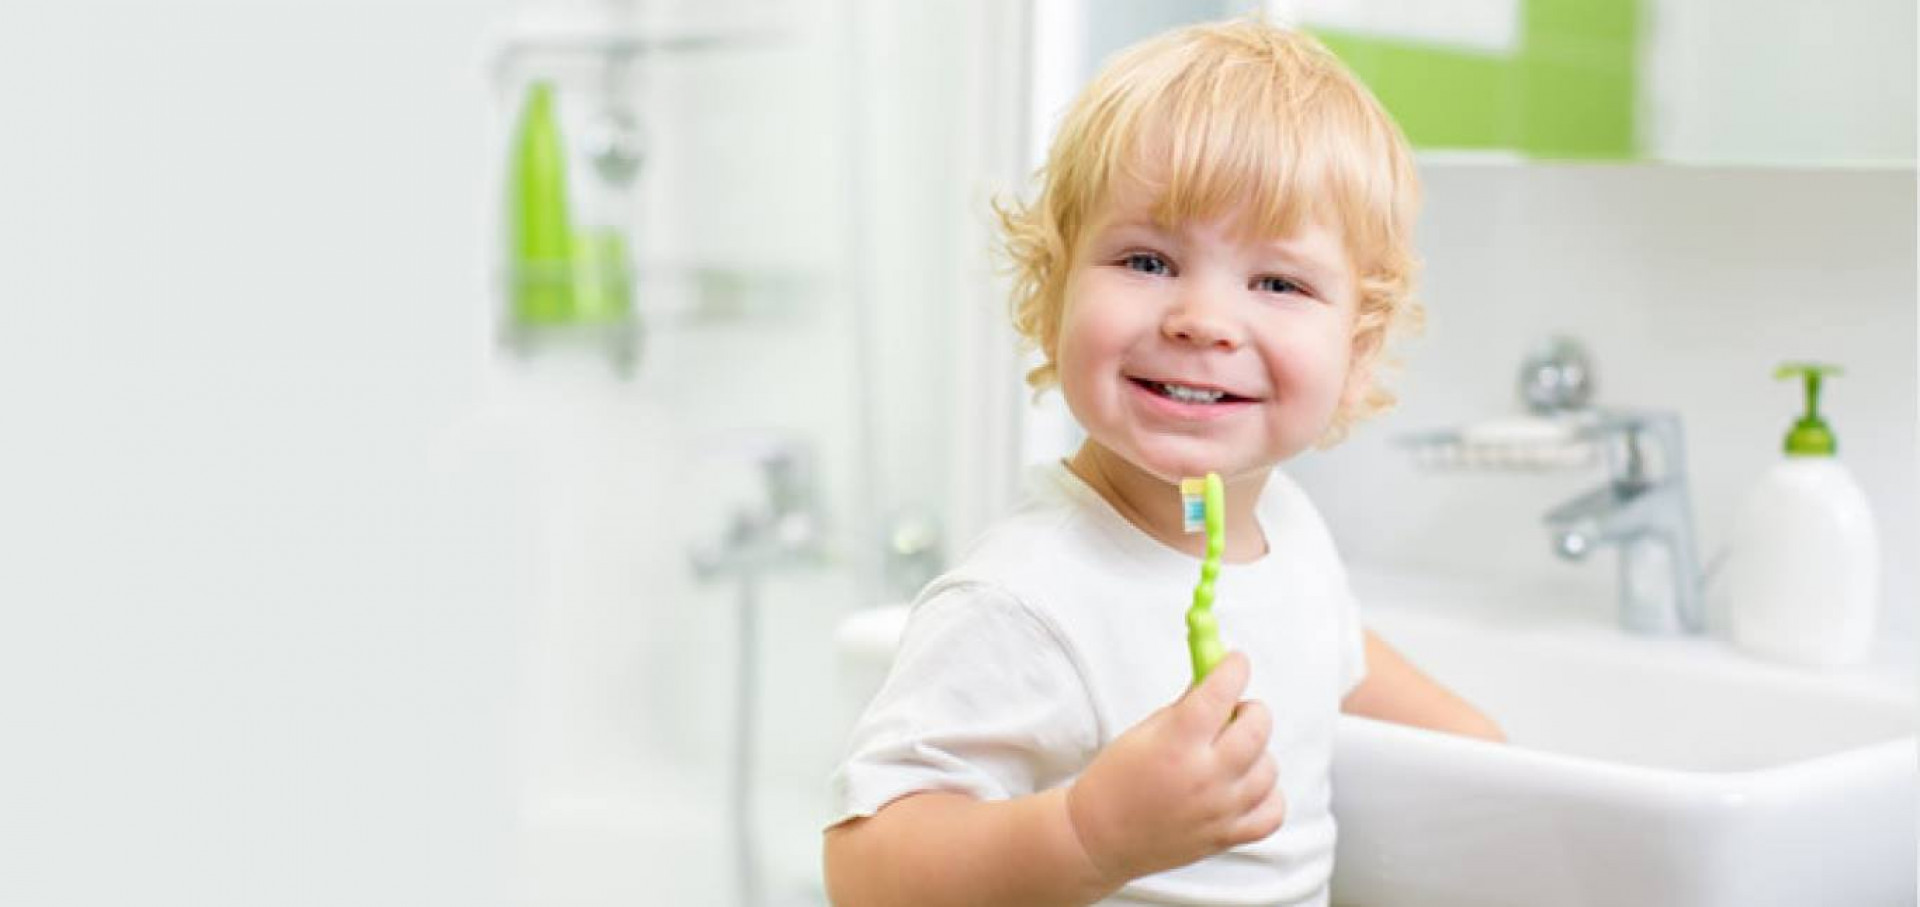 Kaip paruošti vaiką vizitui pas odontologą?